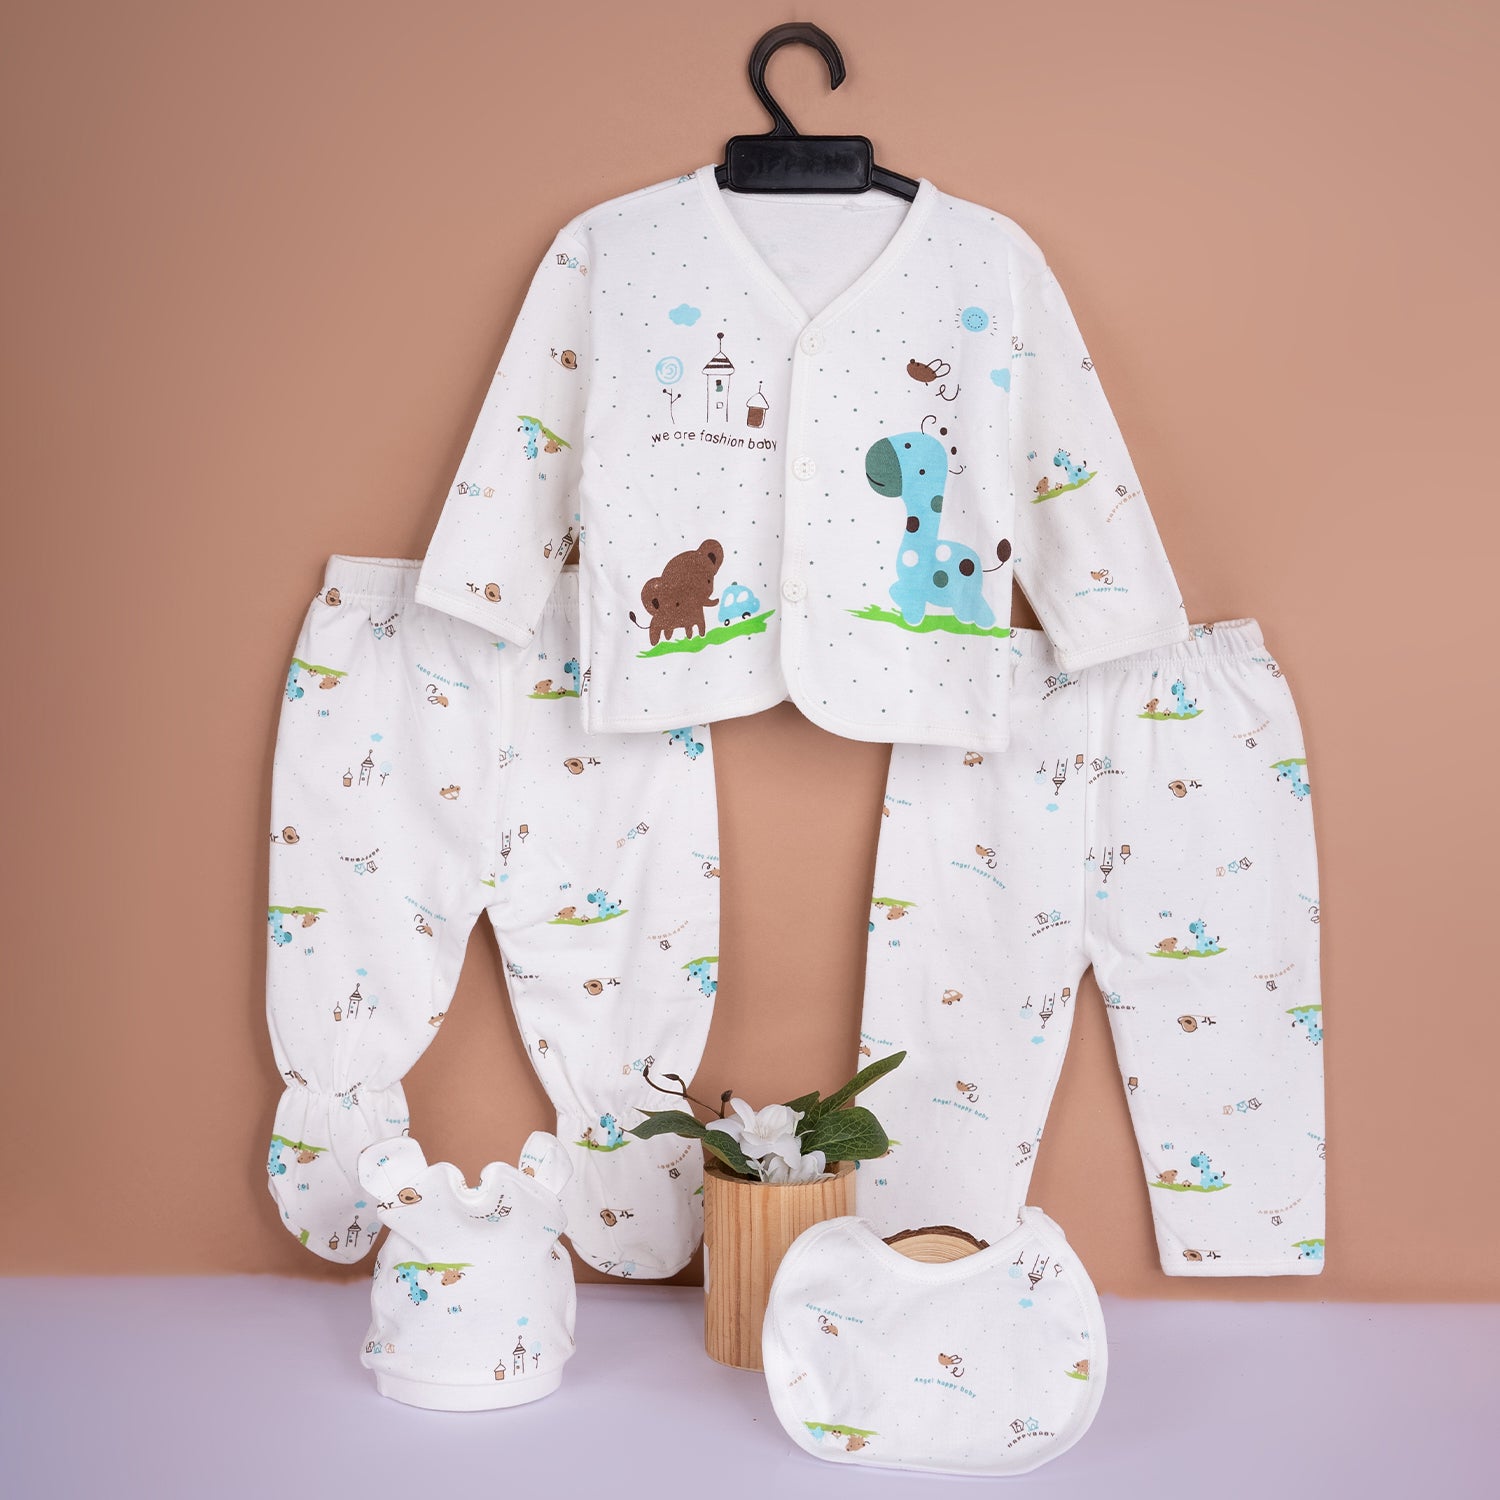 Baby Moo Animal Print Cap Bib Pyjamas 5 Pcs Clothing Gift Set - Blue